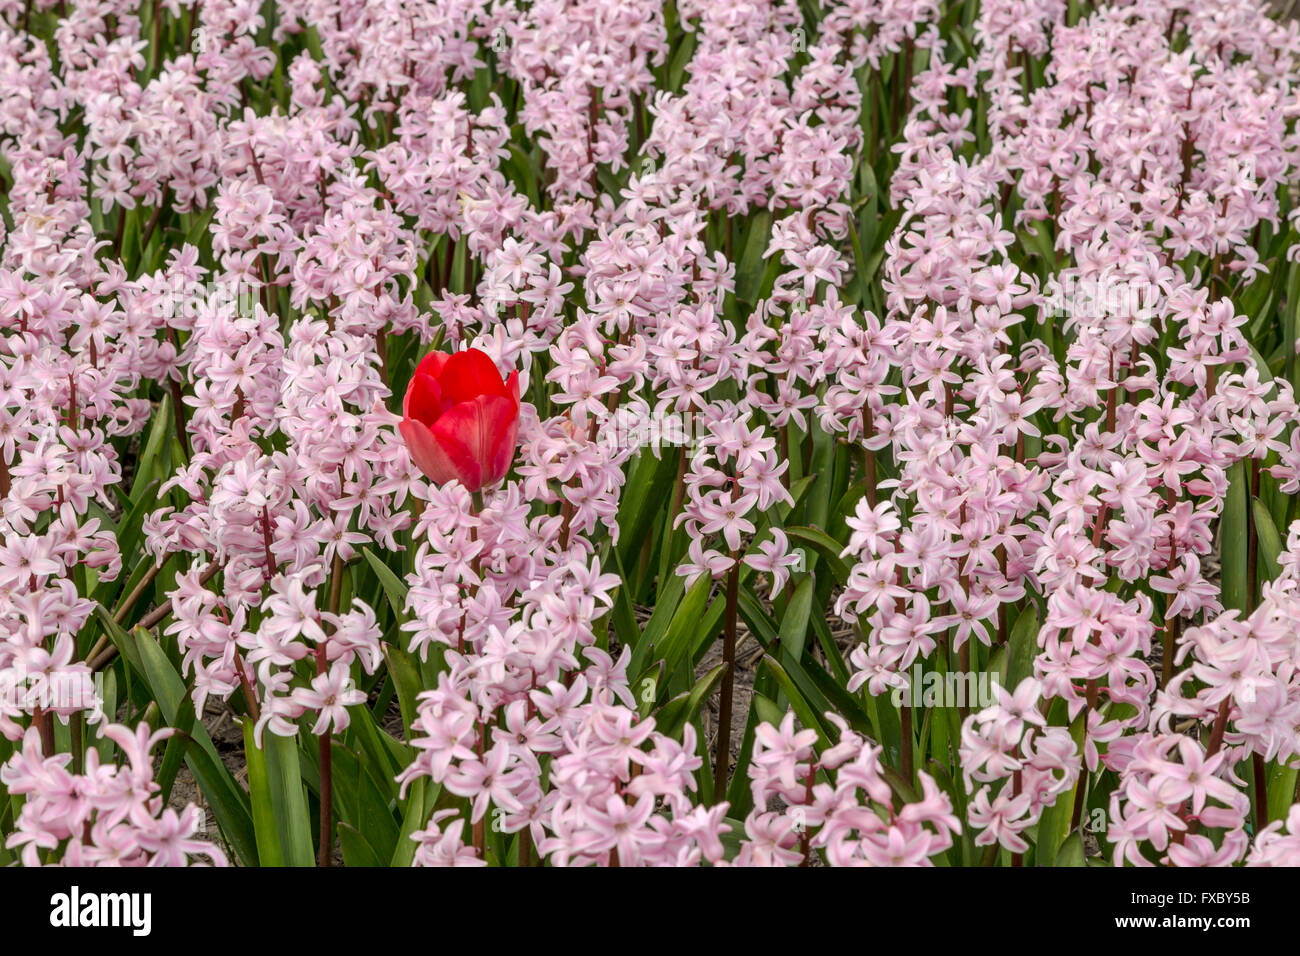 Frühling Zeit in He Niederlande: Odd one Out - eine rote Tulpe Blüte zwischen Rosa Hyazinthen, Hillegom, Süd-Holland. Stockfoto